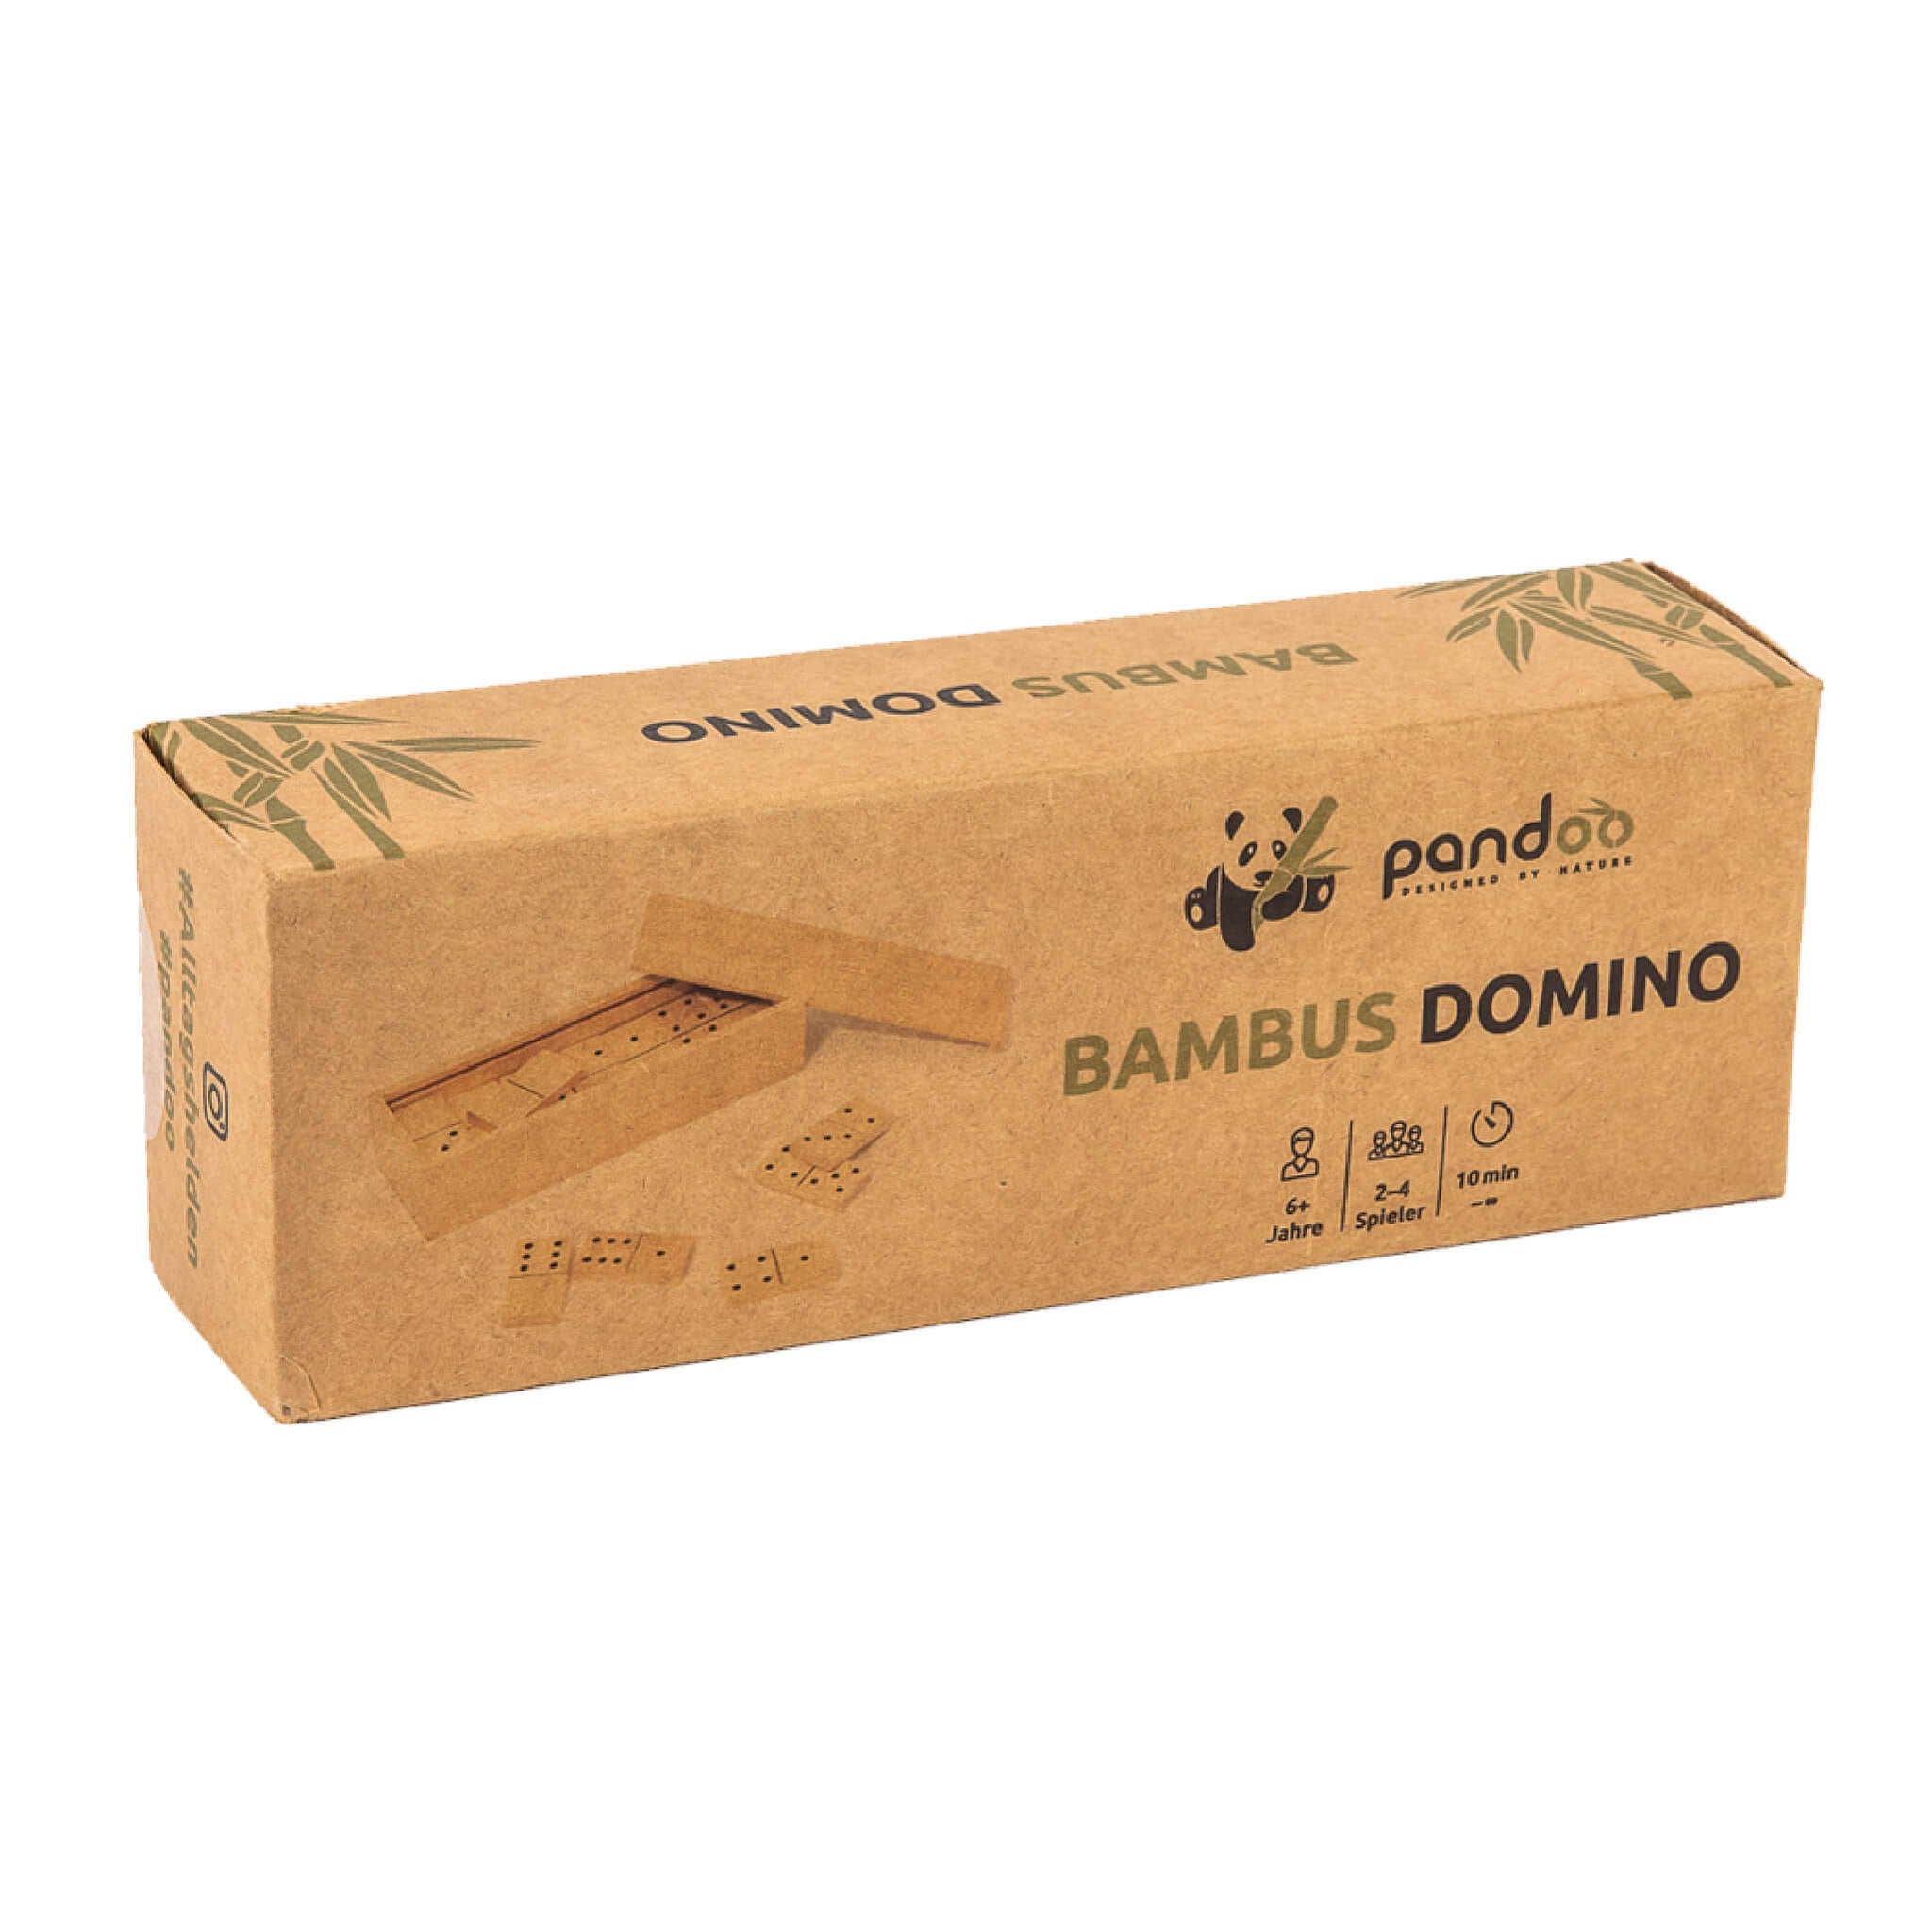 packaging of dominos game in kraft paper